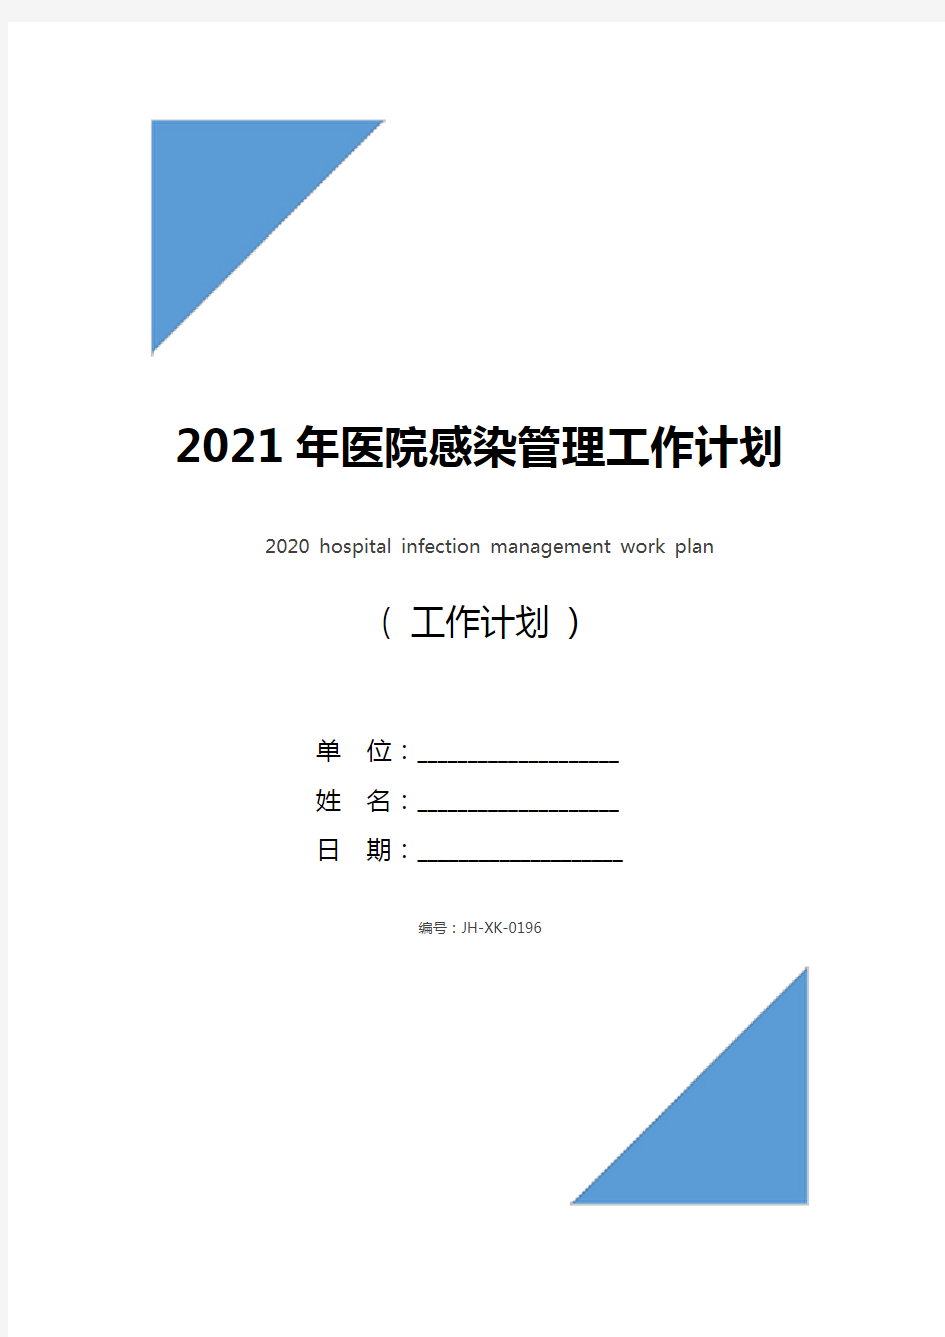 2021年医院感染管理工作计划(最新版)